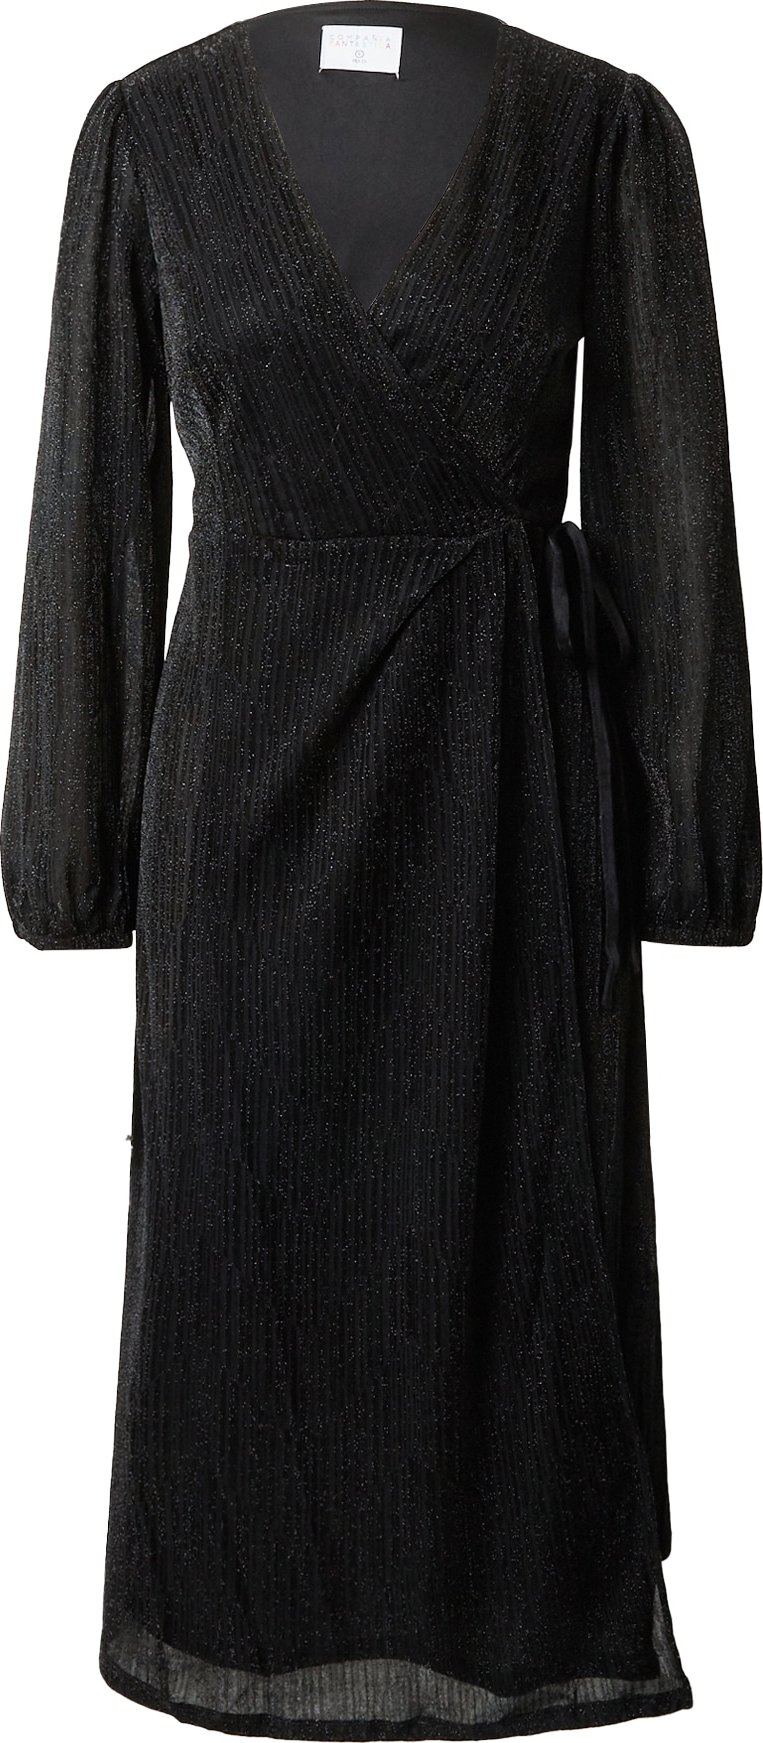 Compania Fantastica Koktejlové šaty černá